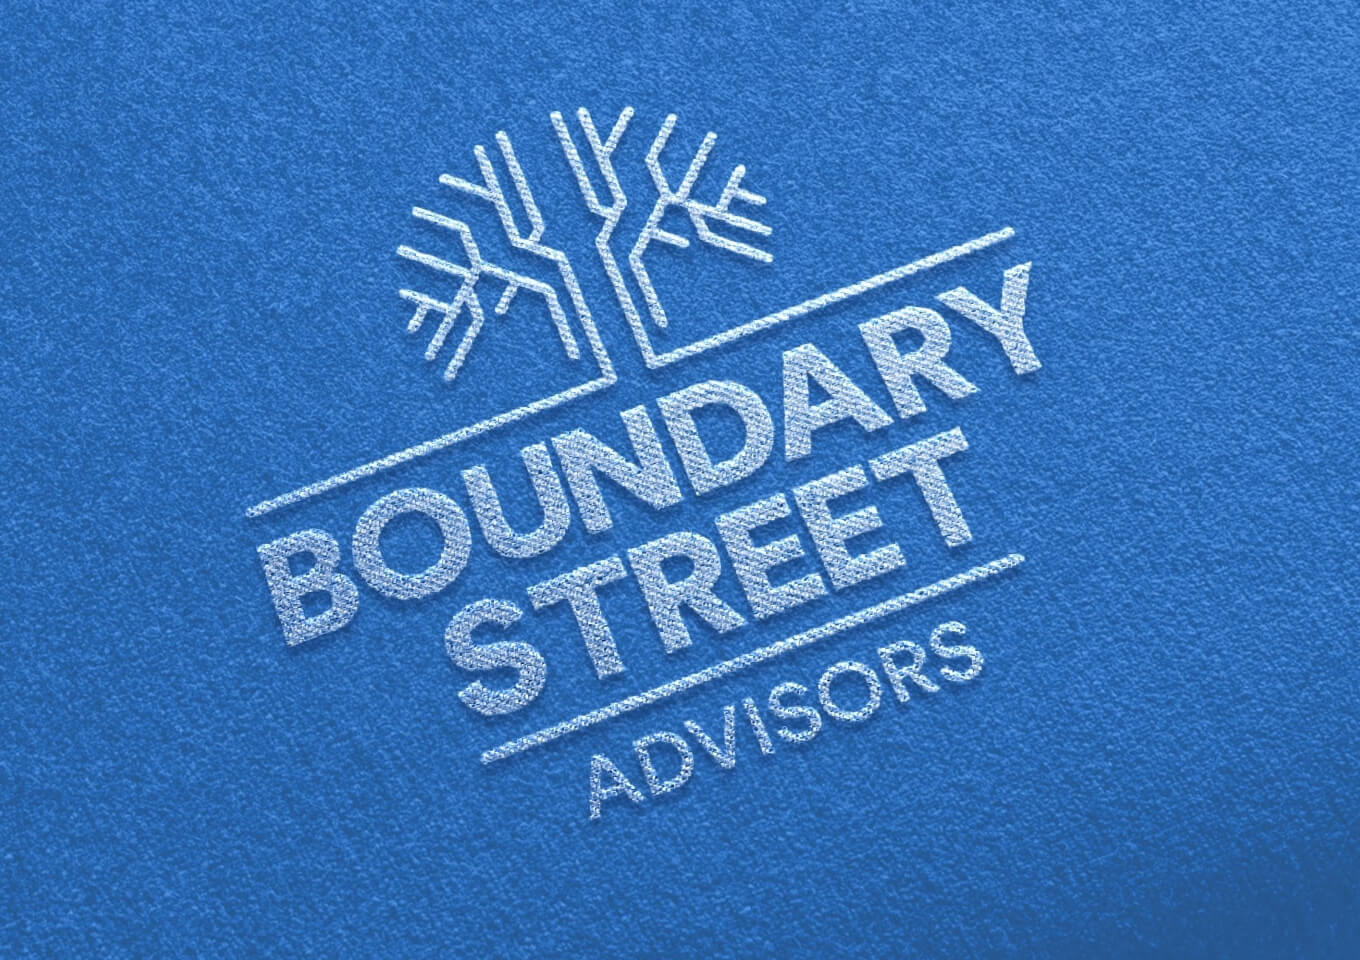 Boundary Street Advisors